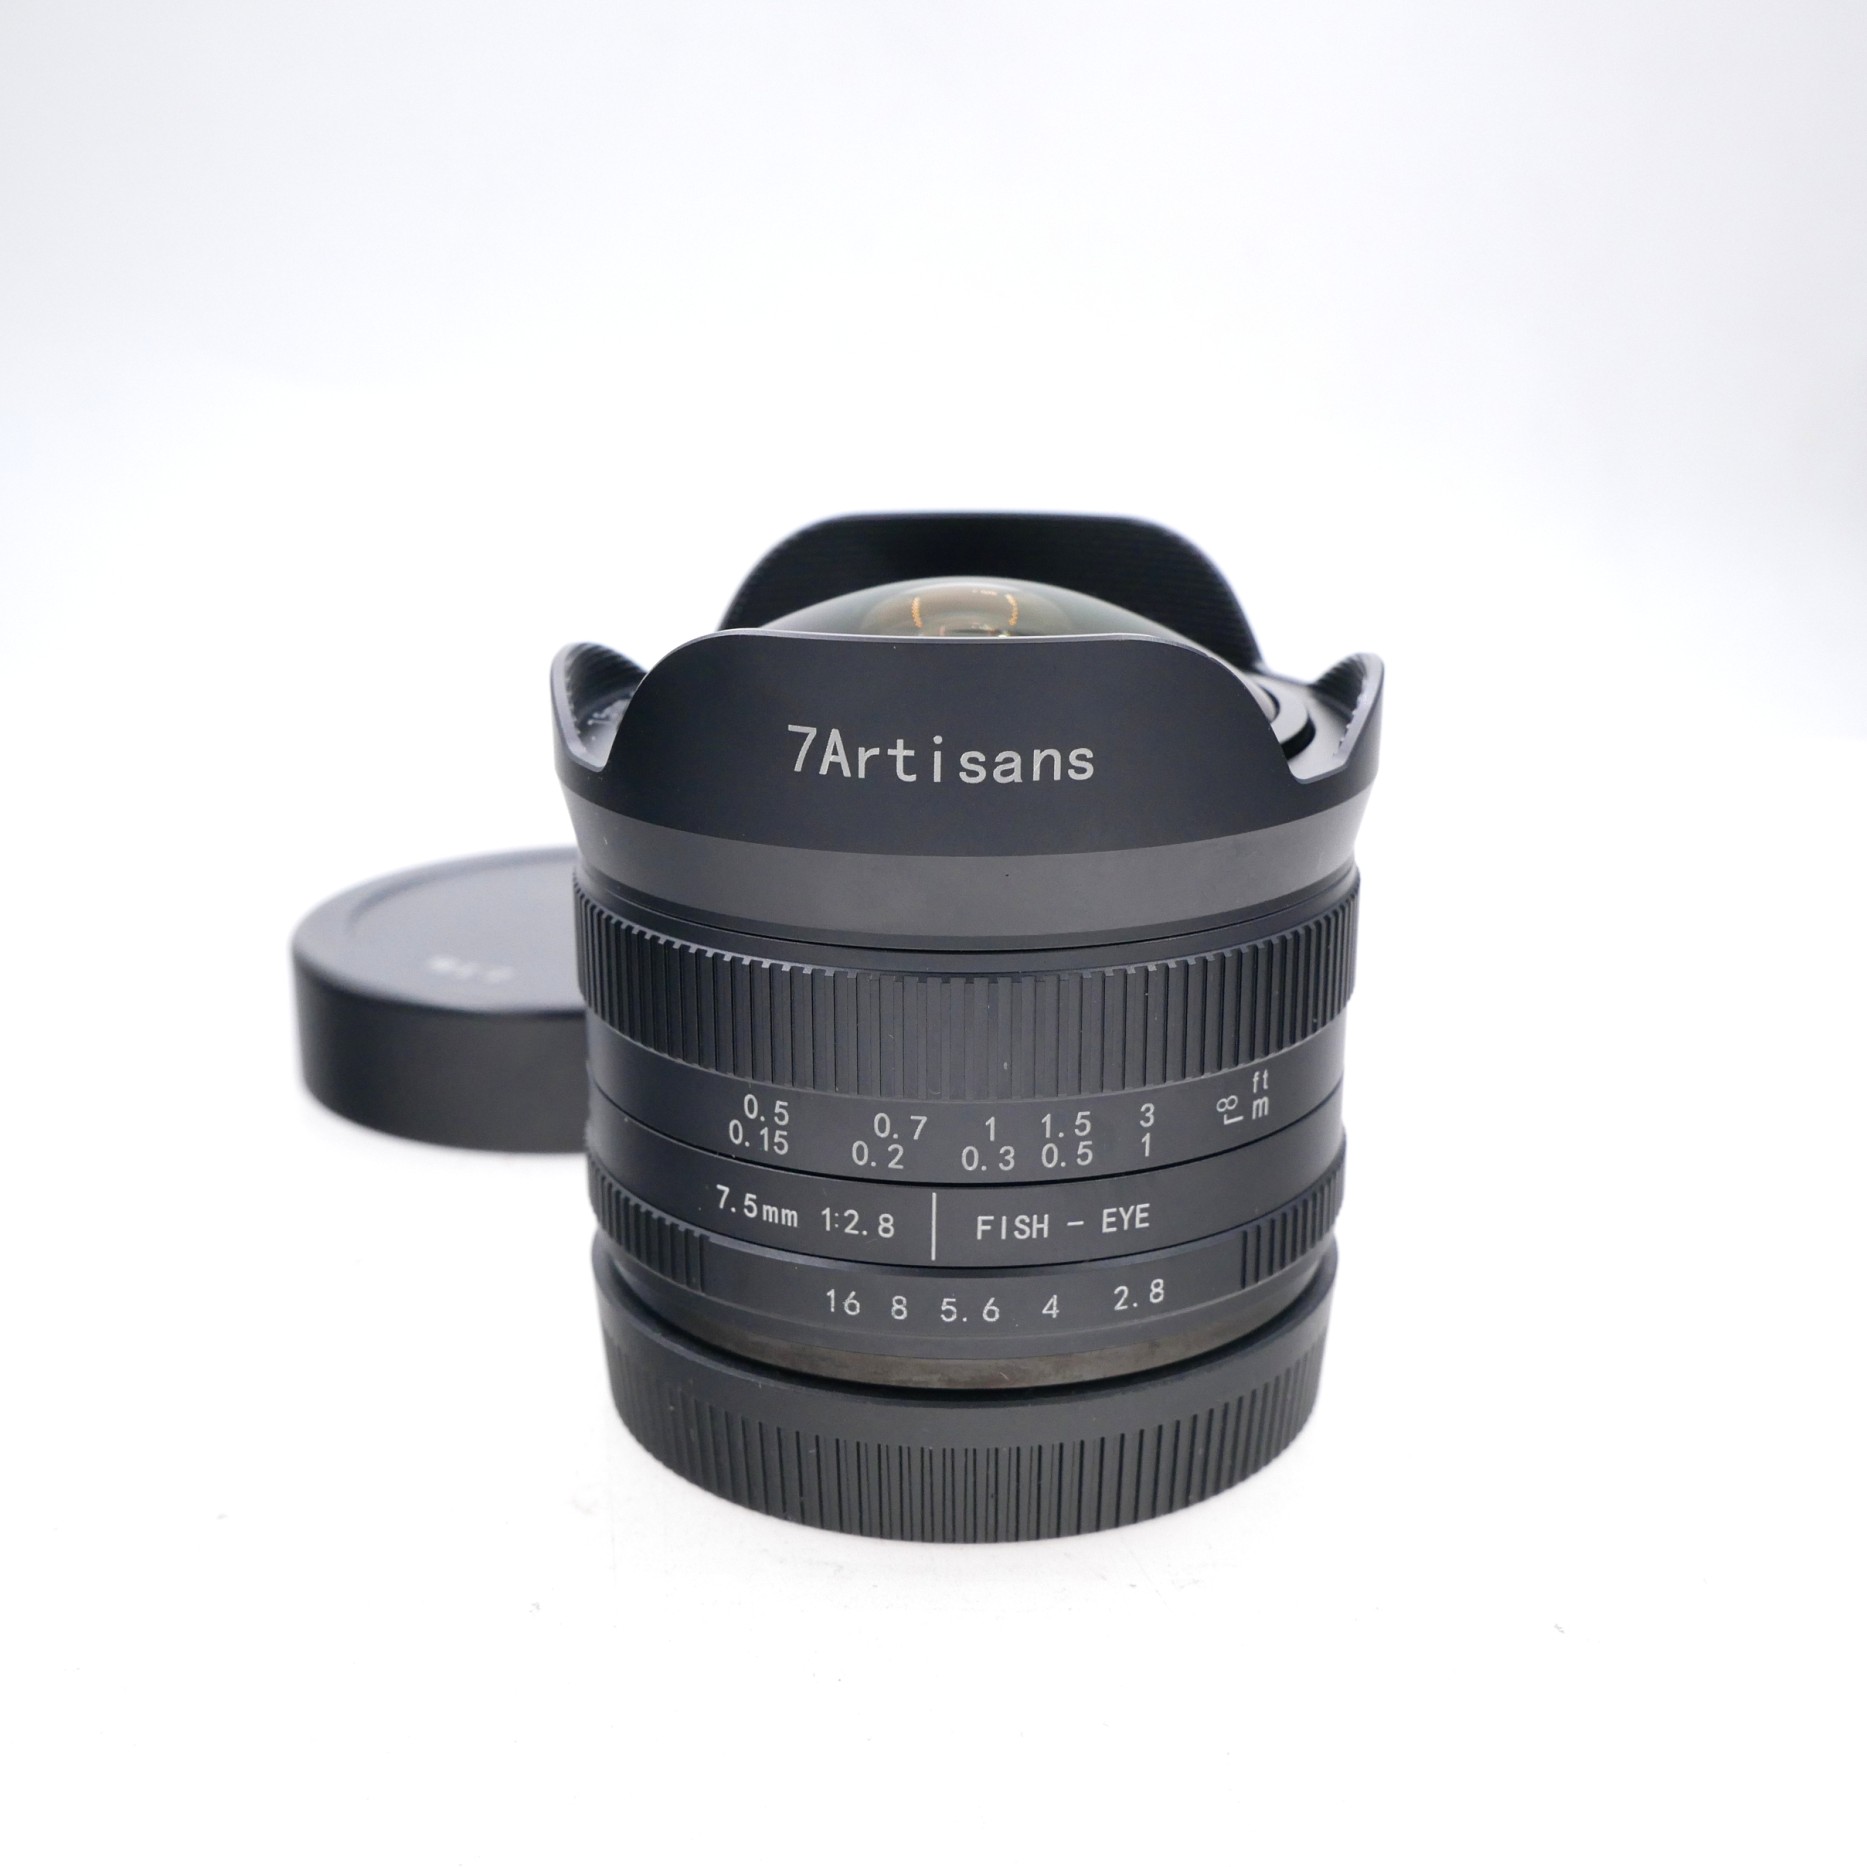 7Artisans 7.5mm F2.8 II Fish-Eye Lens for Canon EF-M Mount 